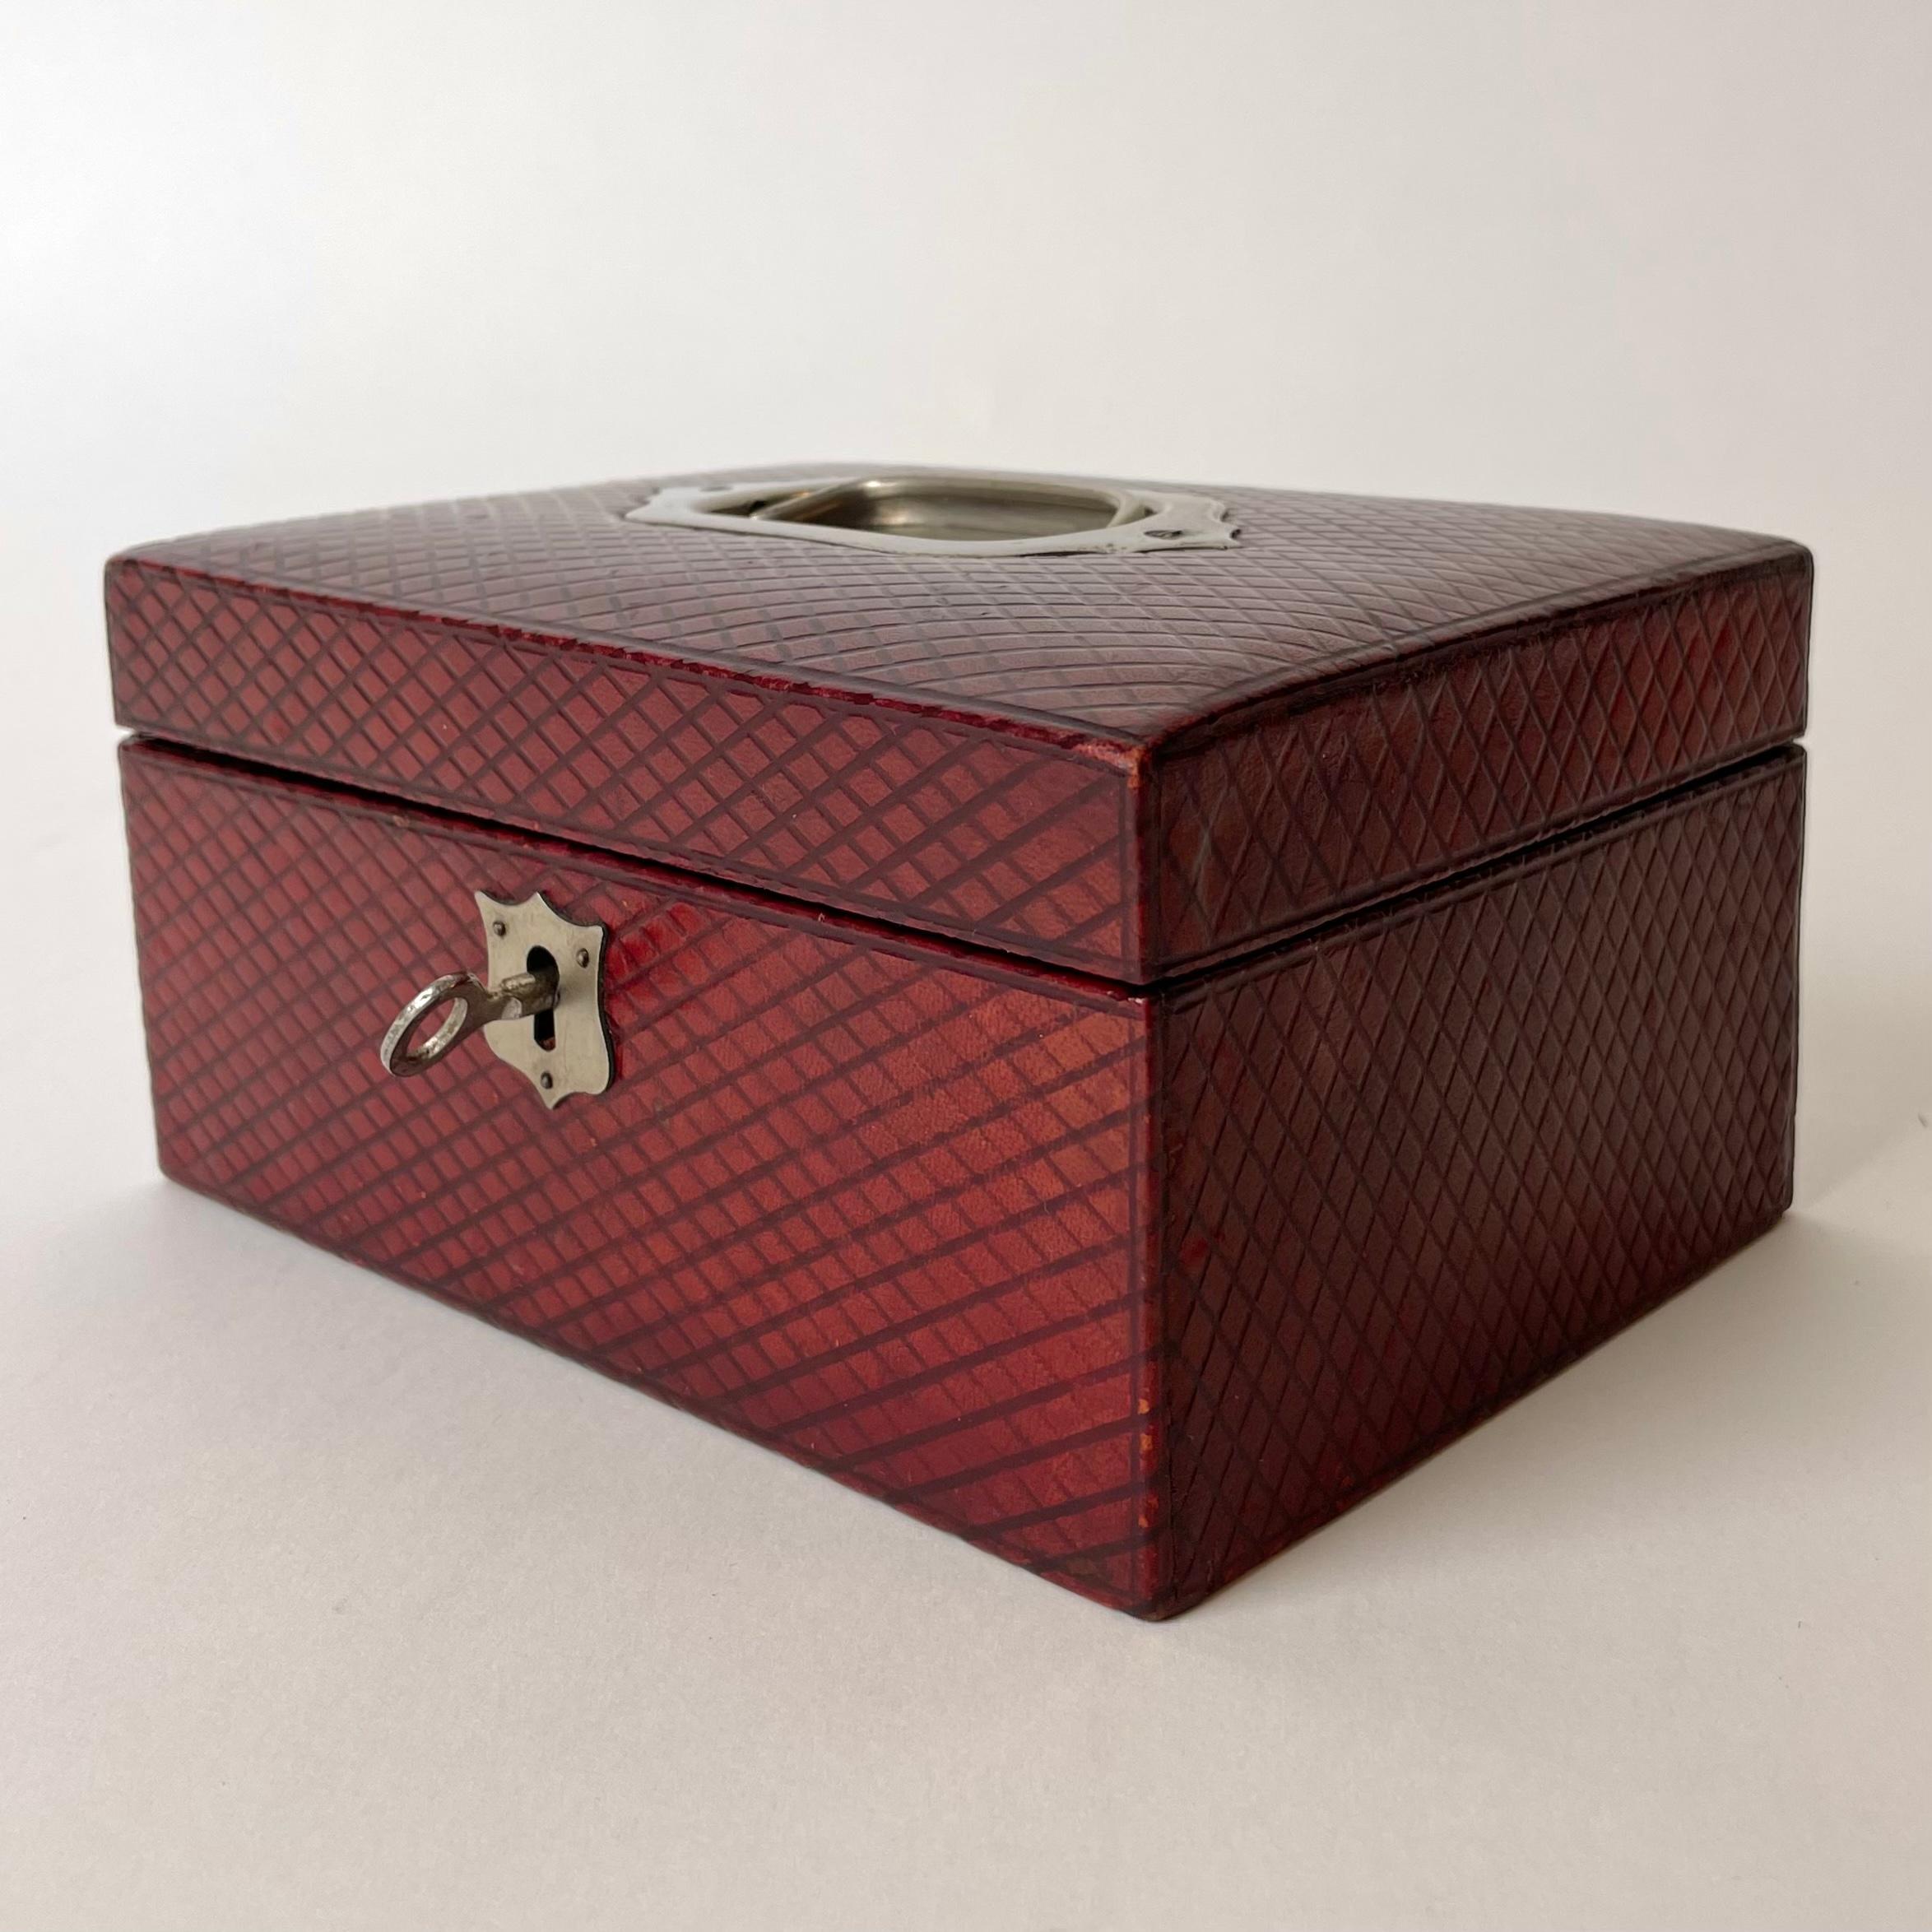 Belle boîte à bijoux en cuir rouge avec un motif à carreaux gaufré. Détails en nickel et avec serrure et clé en état de marche. Probablement fabriqué en Angleterre au début du 20e siècle.

Usure conforme à l'âge et à l'utilisation.